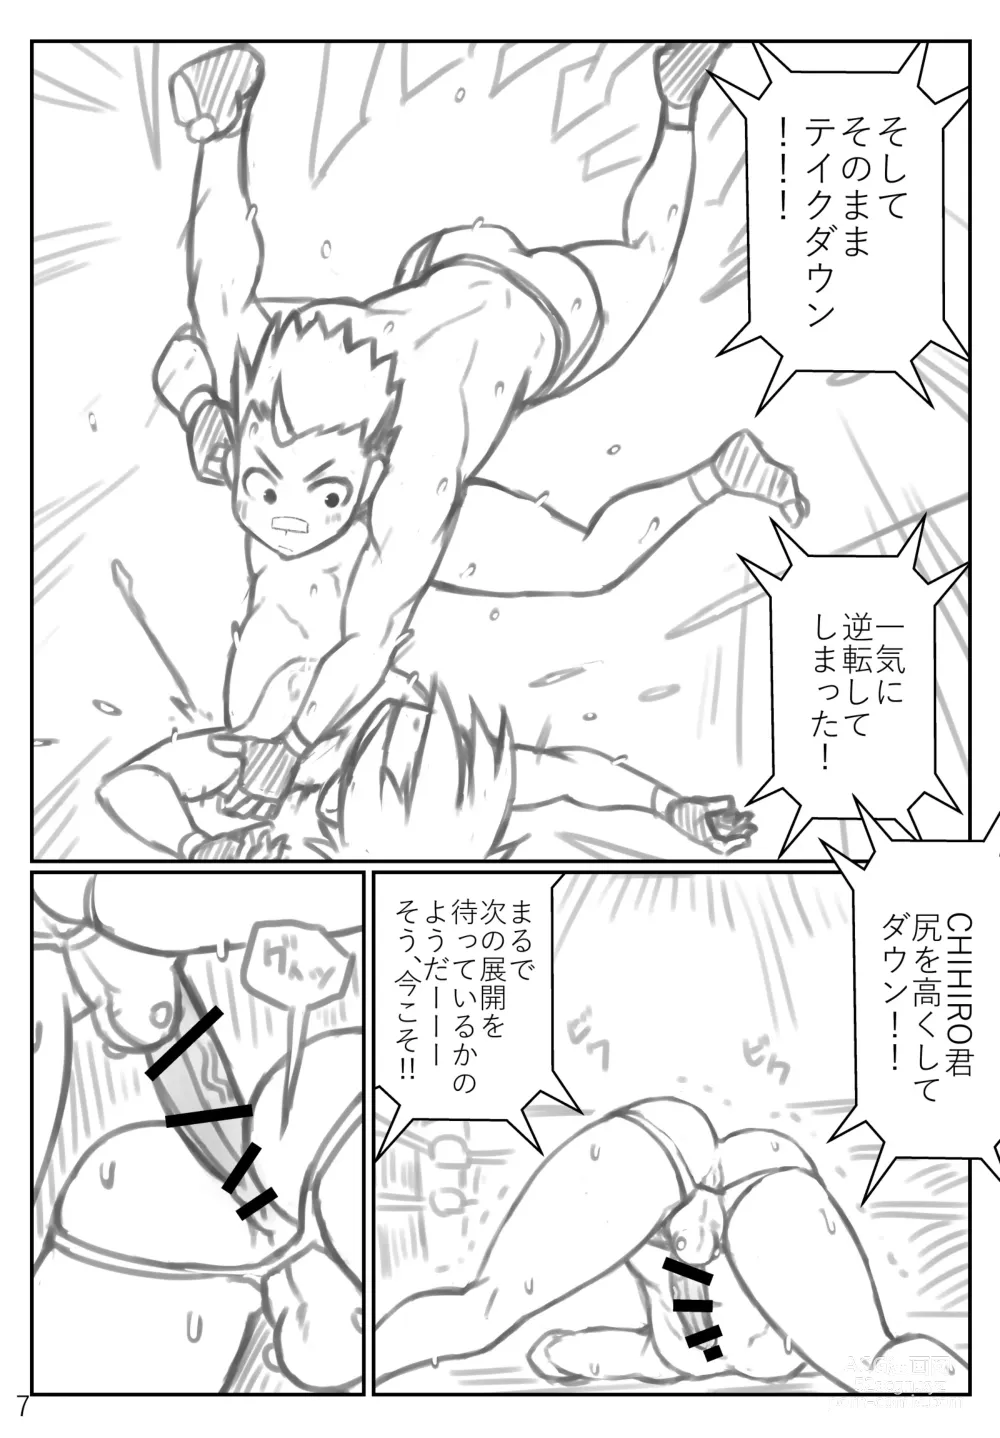 Page 7 of doujinshi Puroresu ♂ no youna nanika